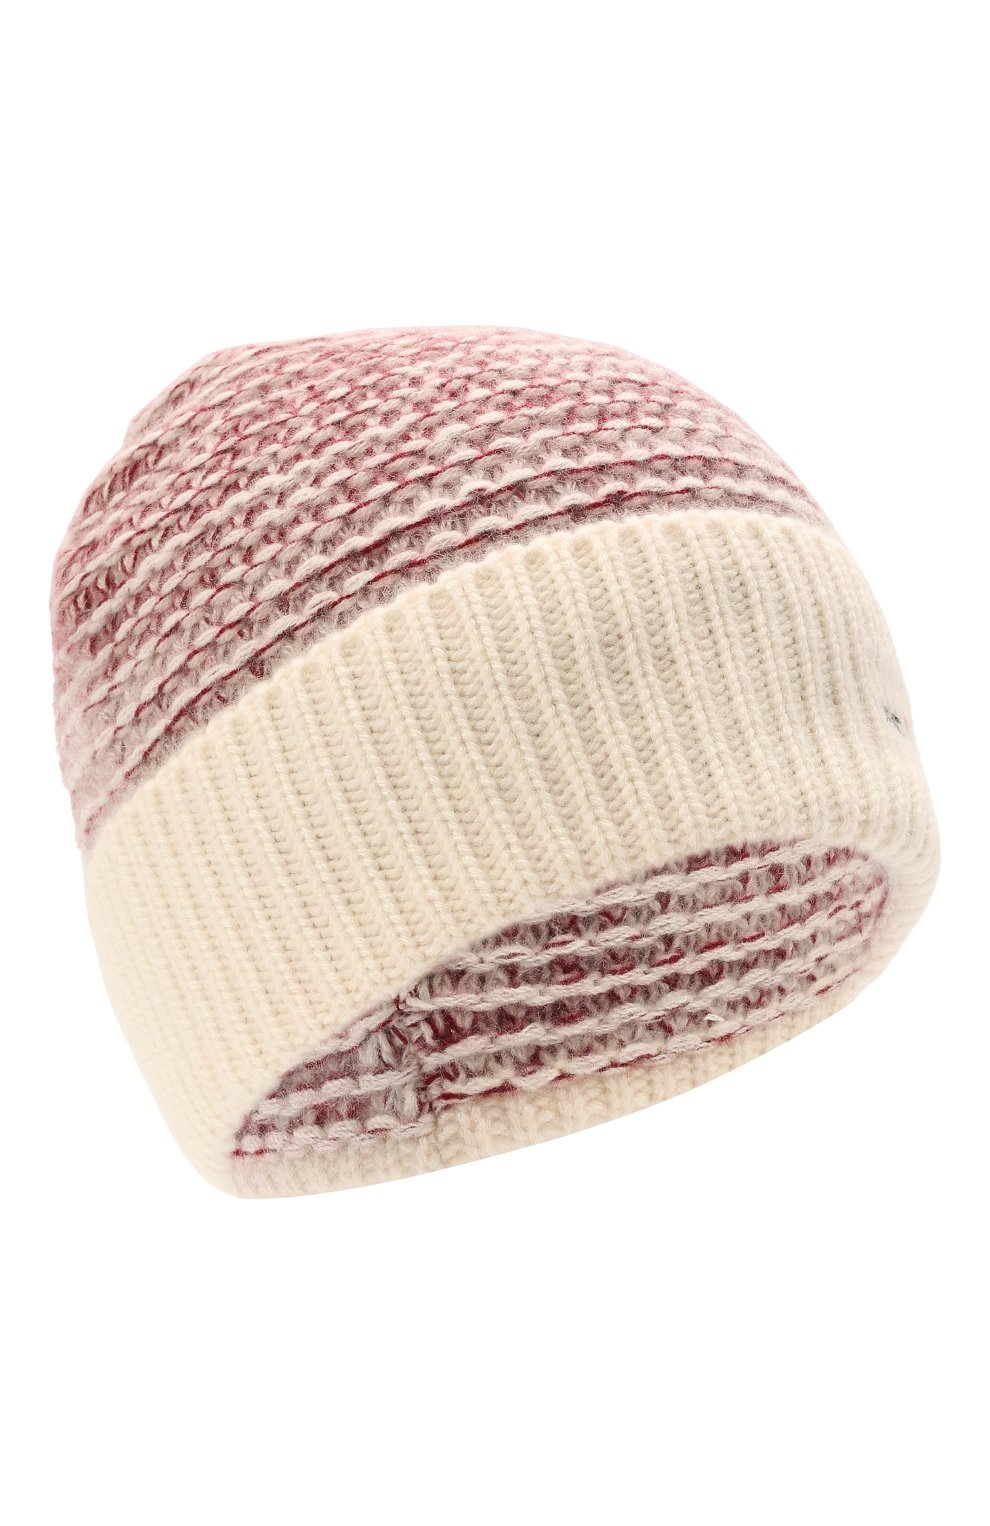 Женская кашемировая шапка KITON розового цвета, арт. D52764X0480A | Фото 1 (Материал: Текстиль, Кашемир, Шерсть)